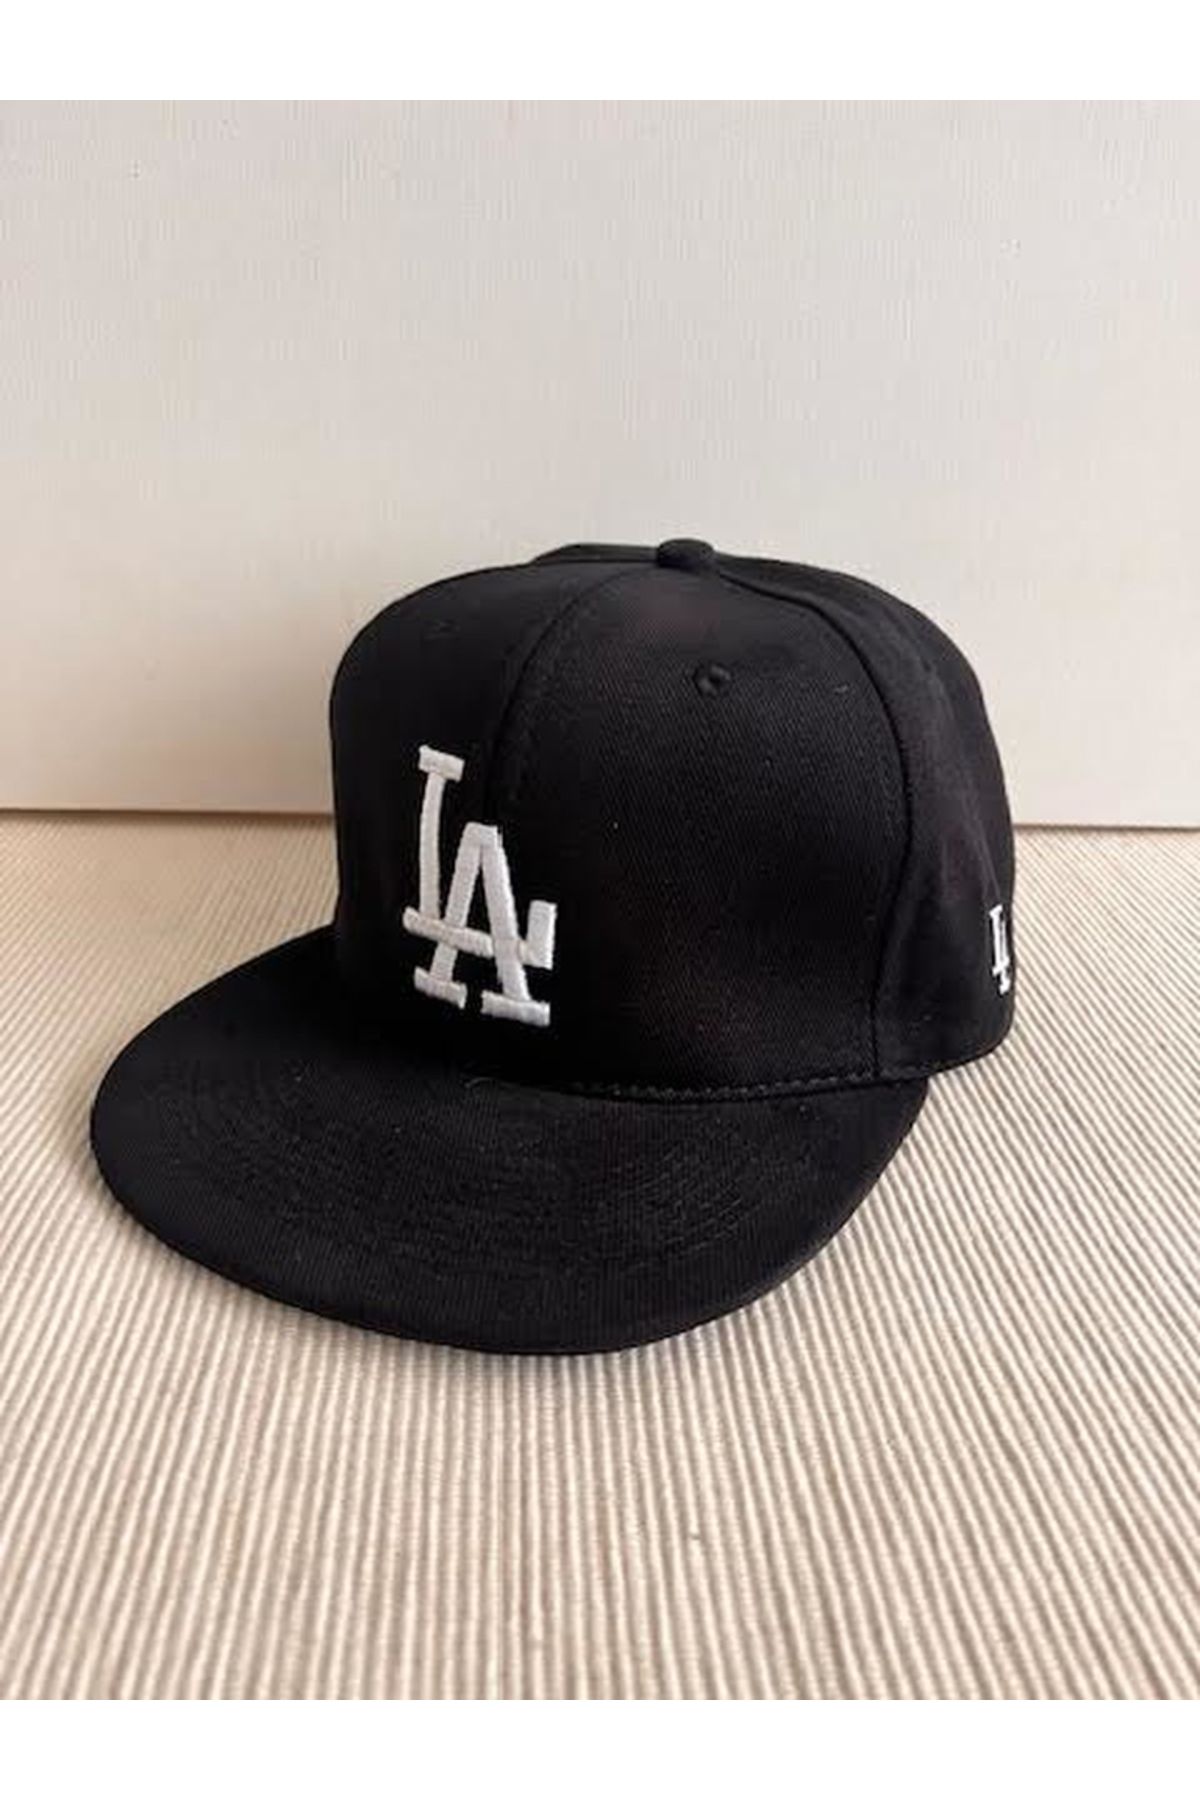 CosmoOutlet La Los Angeles Nakışlı Unisex Arkasından Ayarlanabilir Siyah Renk Hip Hop Şapka